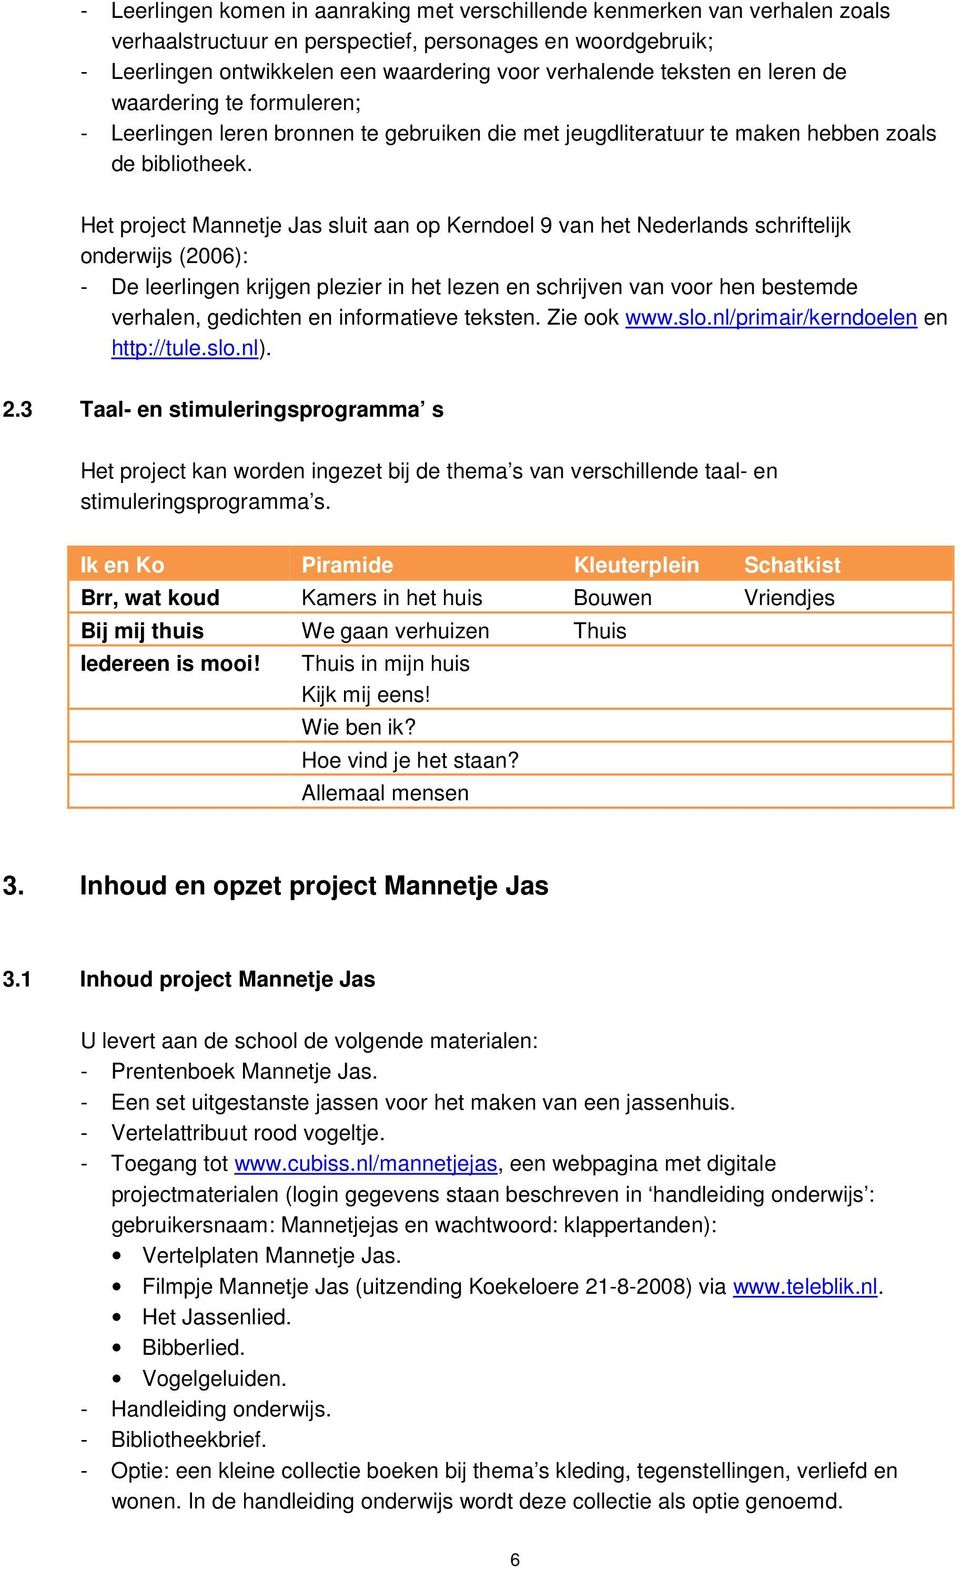 Het project Mannetje Jas sluit aan op Kerndoel 9 van het Nederlands schriftelijk onderwijs (2006): - De leerlingen krijgen plezier in het lezen en schrijven van voor hen bestemde verhalen, gedichten